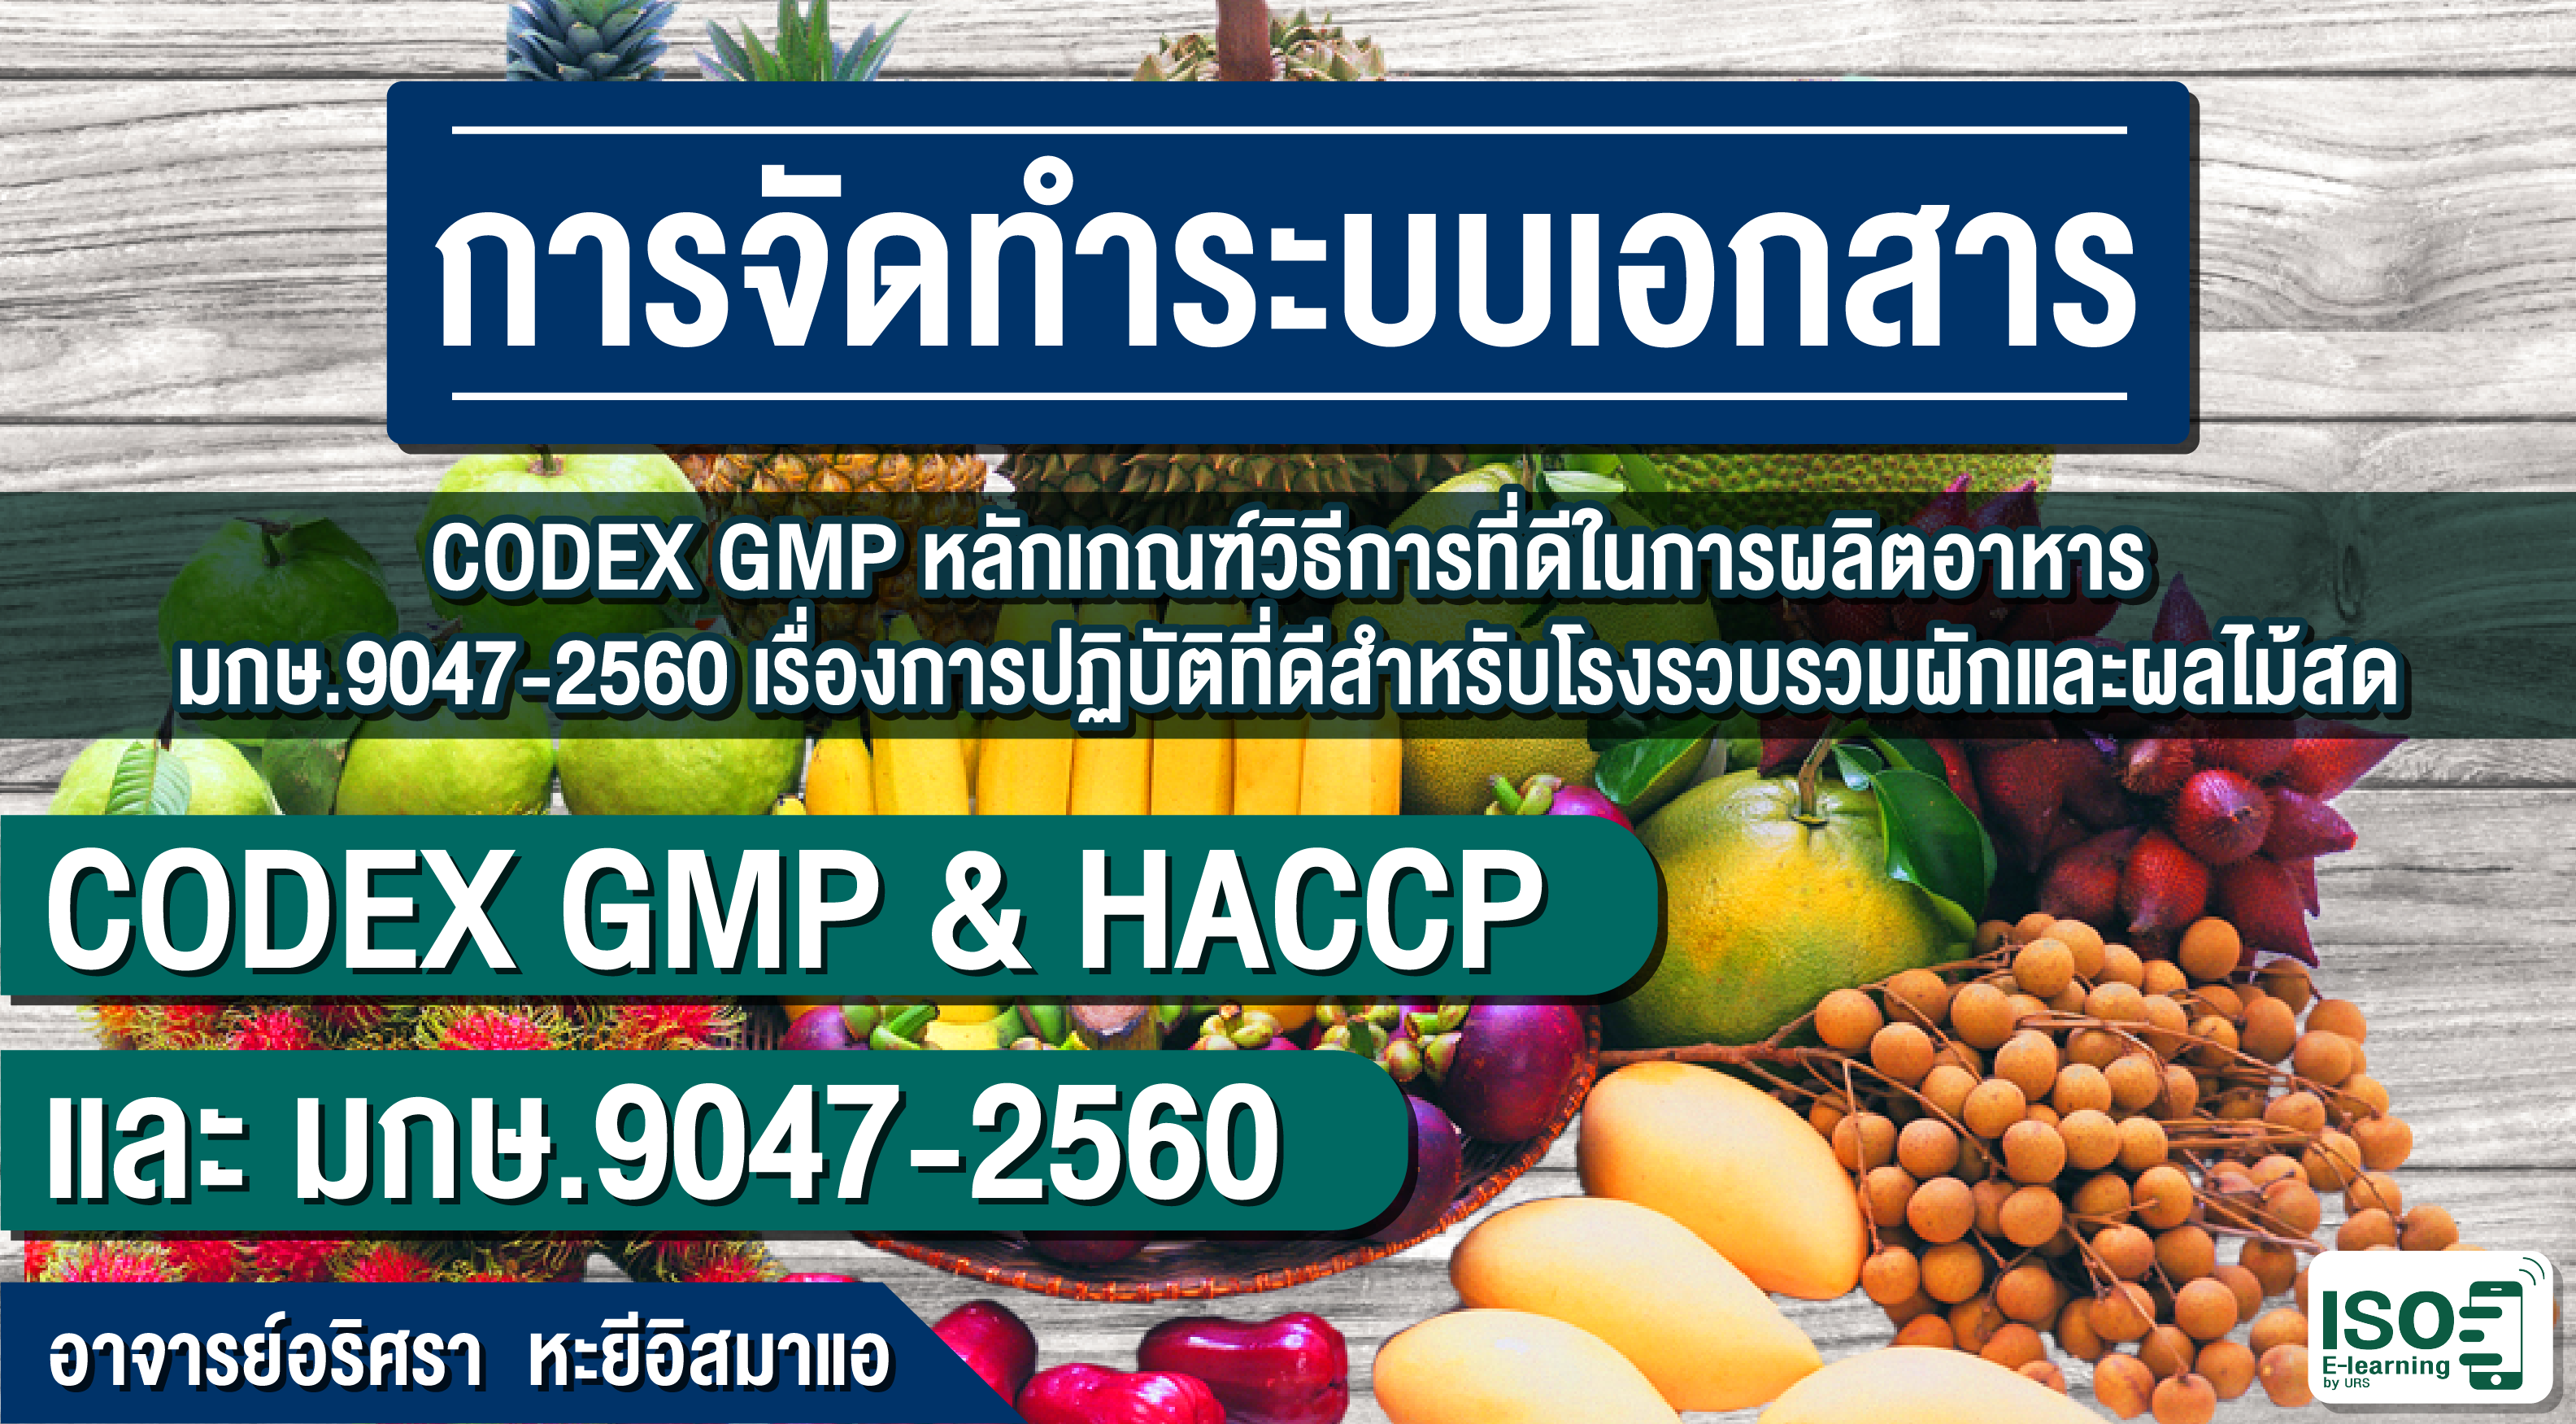 CODEX GMP & HACCP และ มกษ.9047-2560